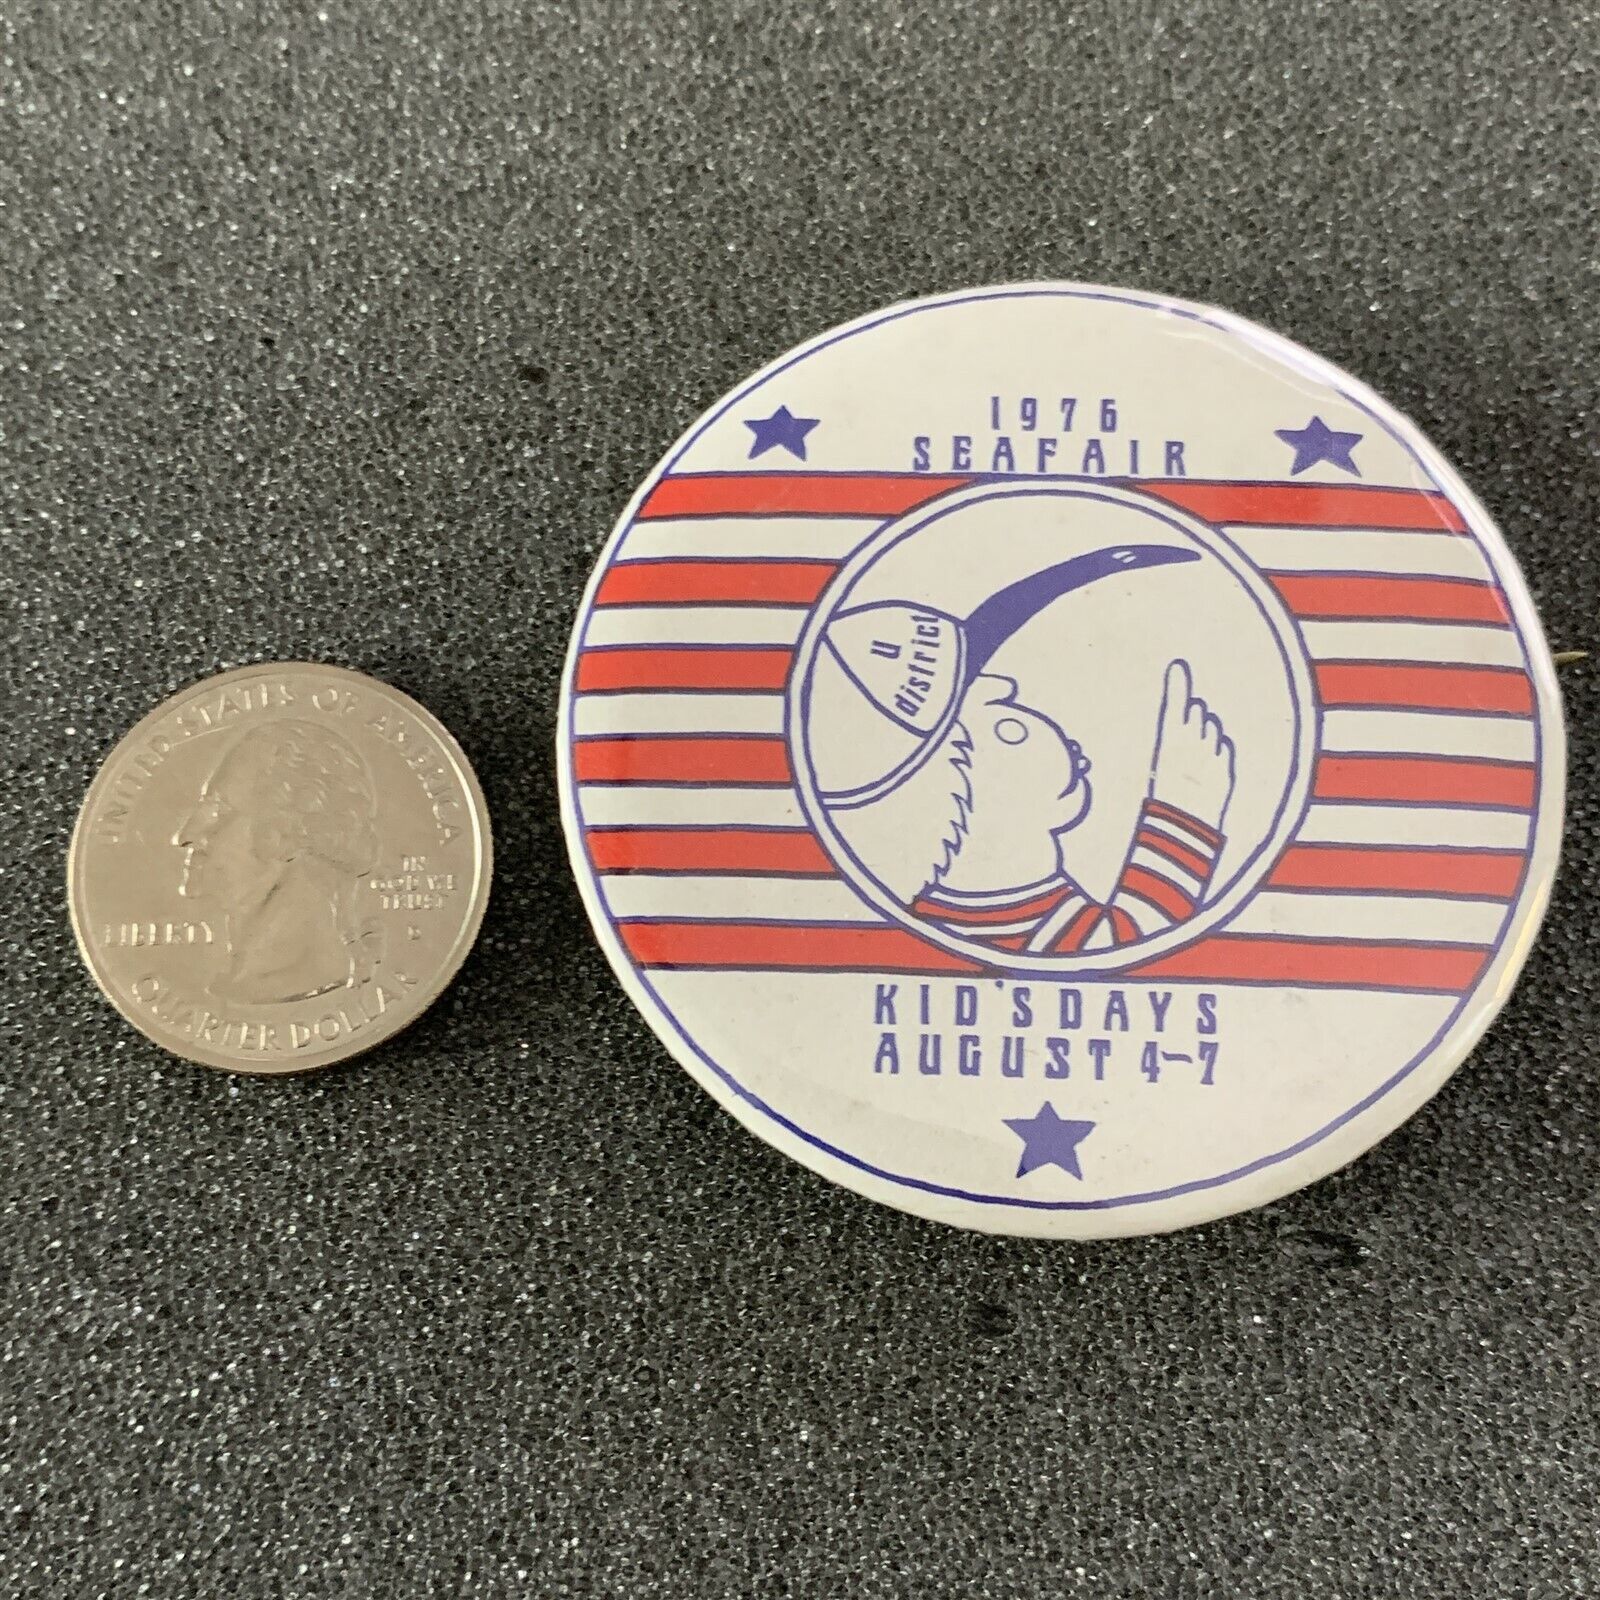 1976 Seattle Seafair Kids Days Travel Souvenir Pin Pinback Button #40486